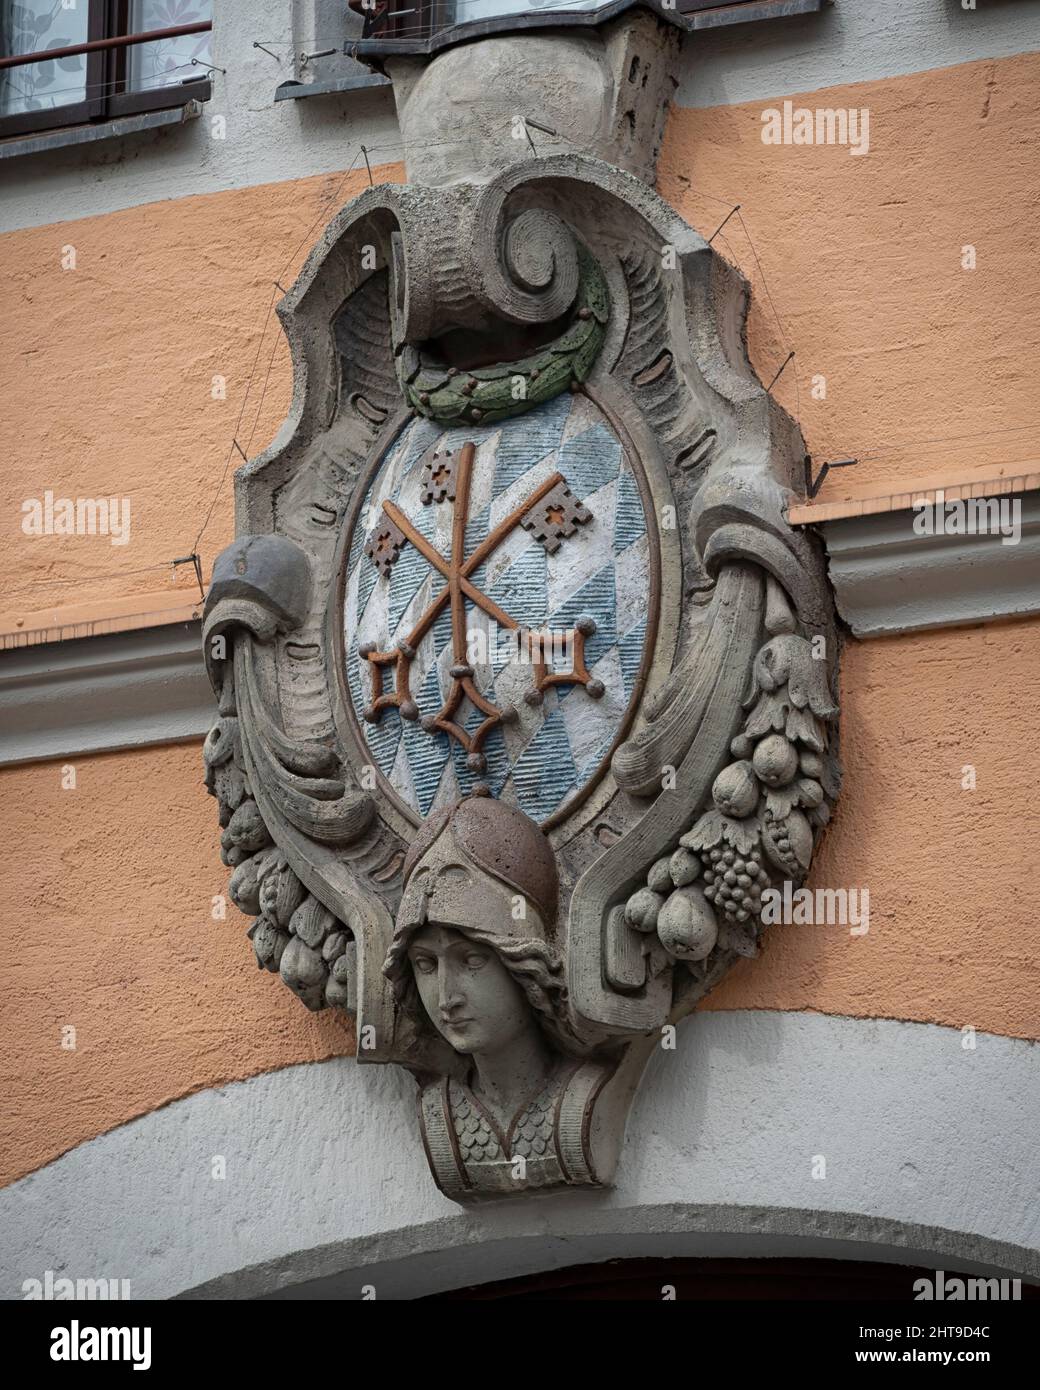 REGENSBURG, ALEMANIA - 11 DE JULIO de 2019: Antiguo escudo de armas tallado del distrito de Stadtamhof que es diferente del escudo de armas de la ciudad Foto de stock